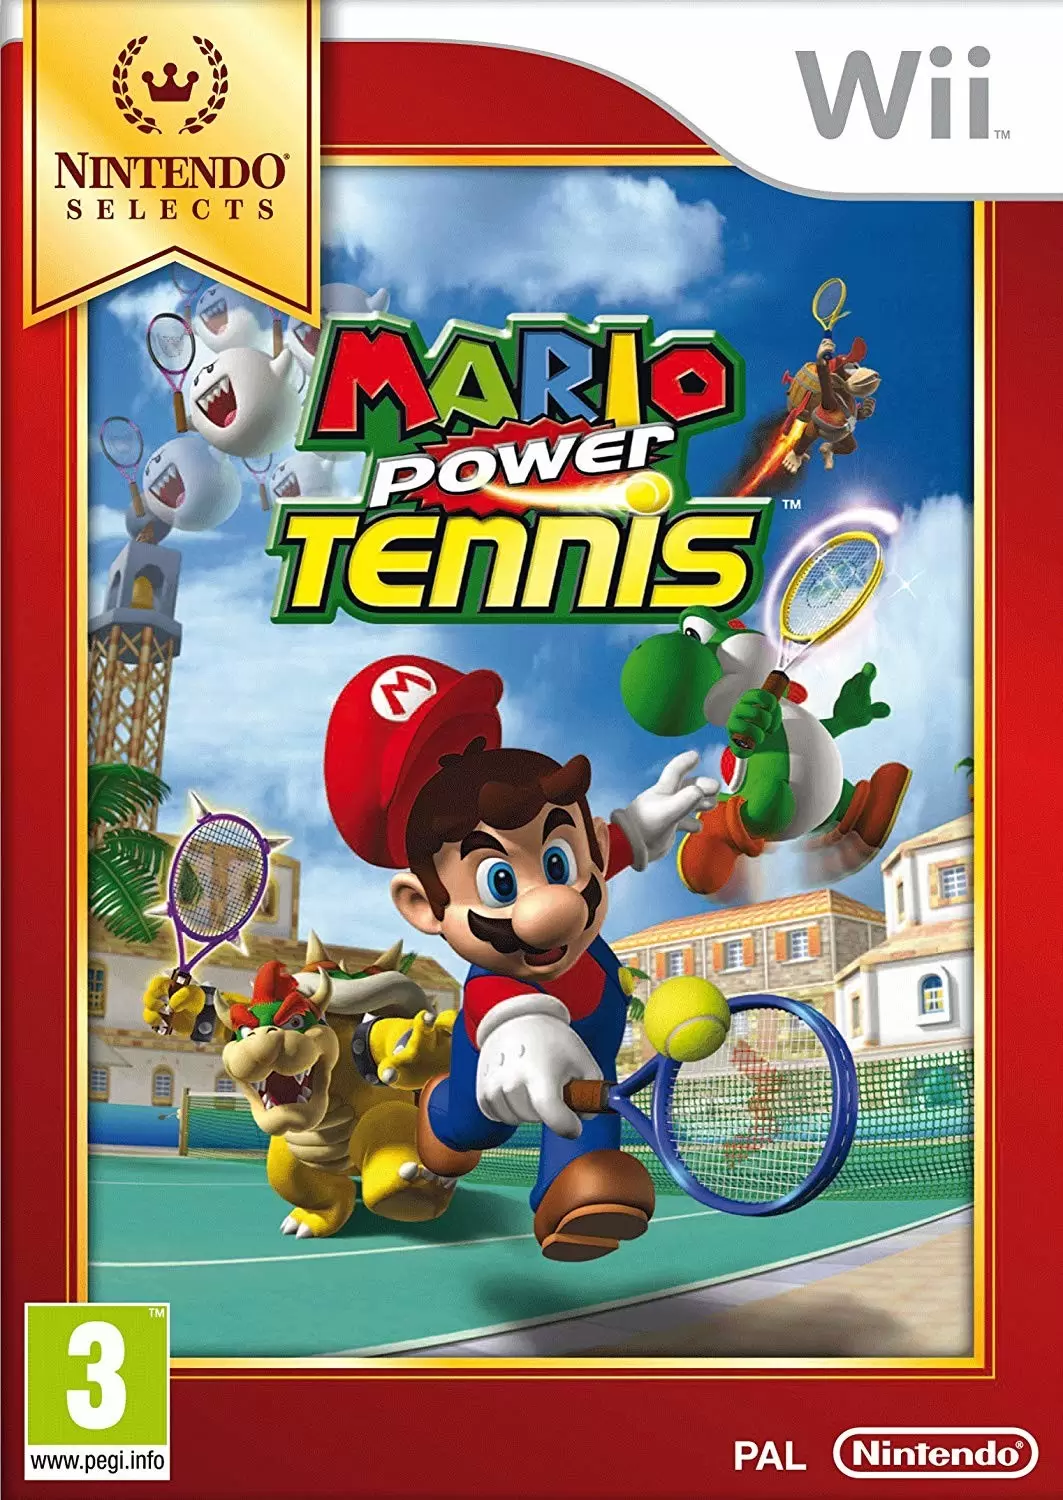 Nintendo Wii Games - Mario Power Tennis (Nintendo Selects)